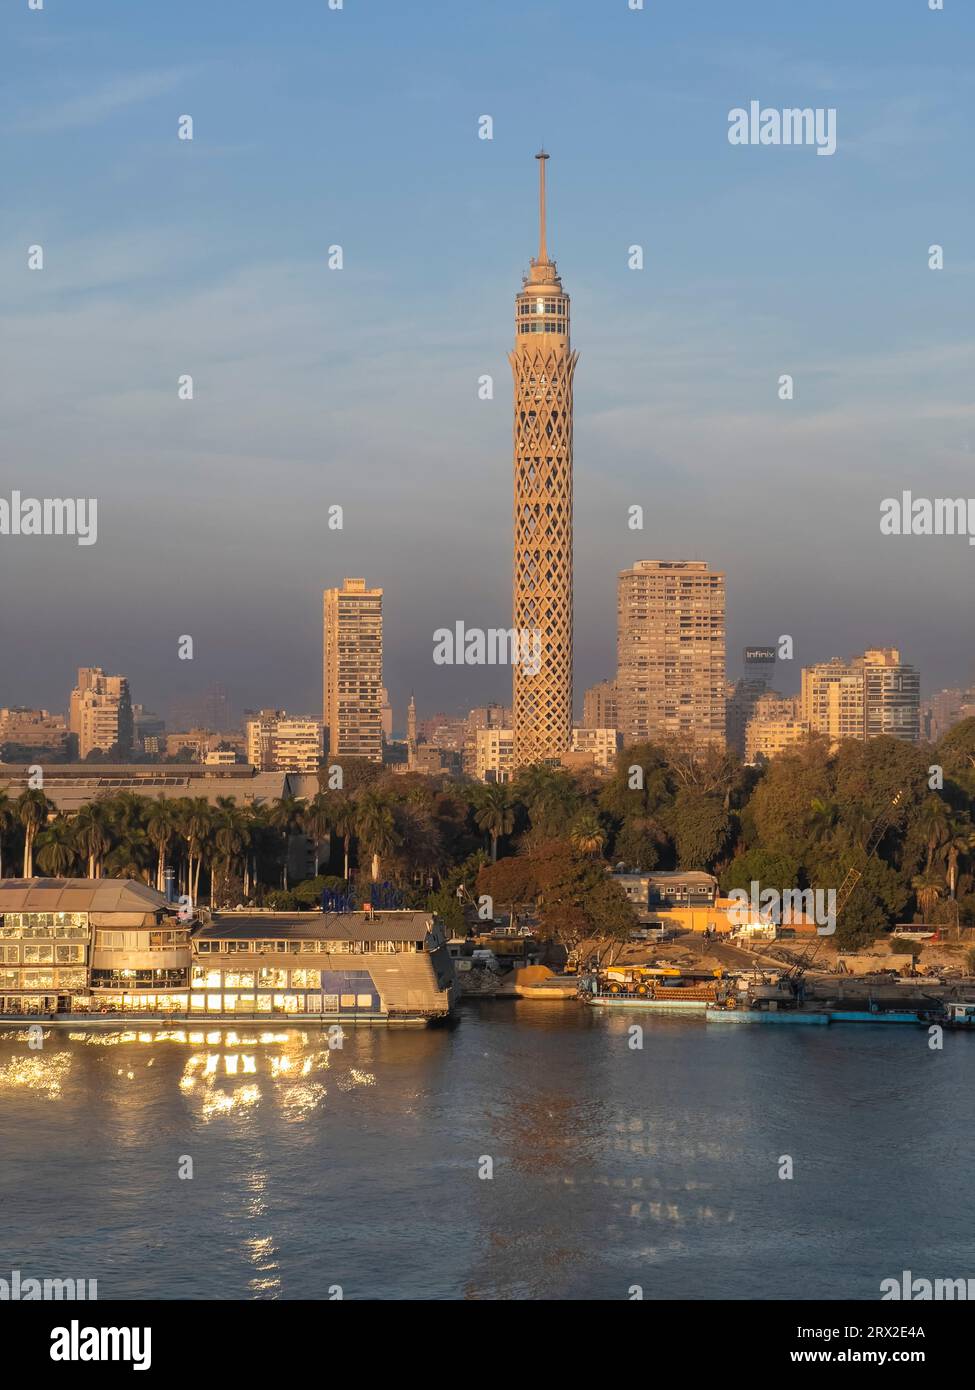 La Torre del Cairo, la struttura più alta dell'Egitto e del Nord Africa, che si innalza per 187 metri, il Nilo, il Cairo, l'Egitto, nord Africa, Africa Foto Stock